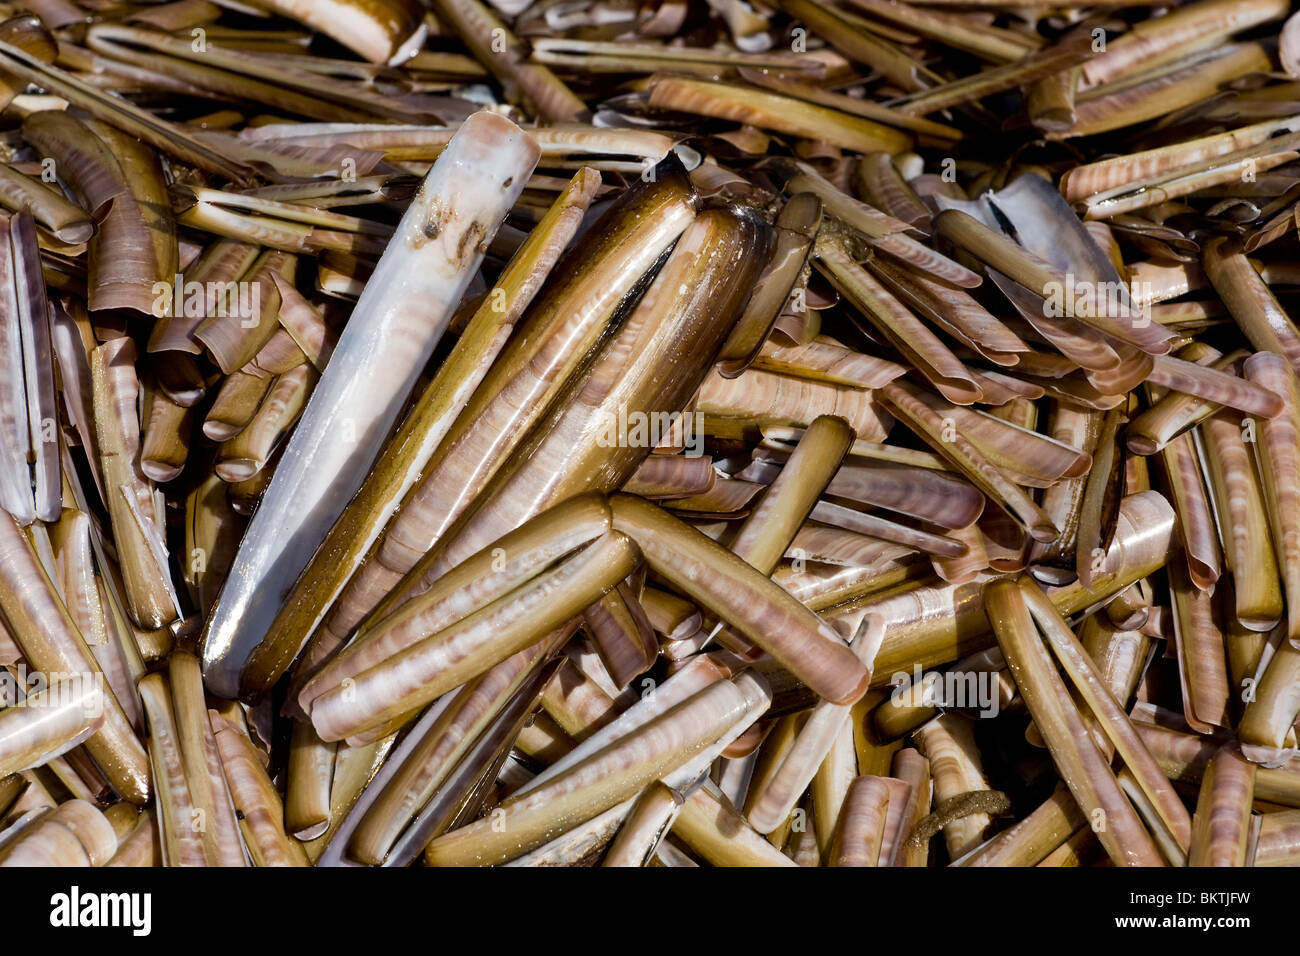 Aangespoelde schelpen van de Amerikaanse zwaardschede op het strand nabij Kwade Hoek, Voordelta. Stock Photo